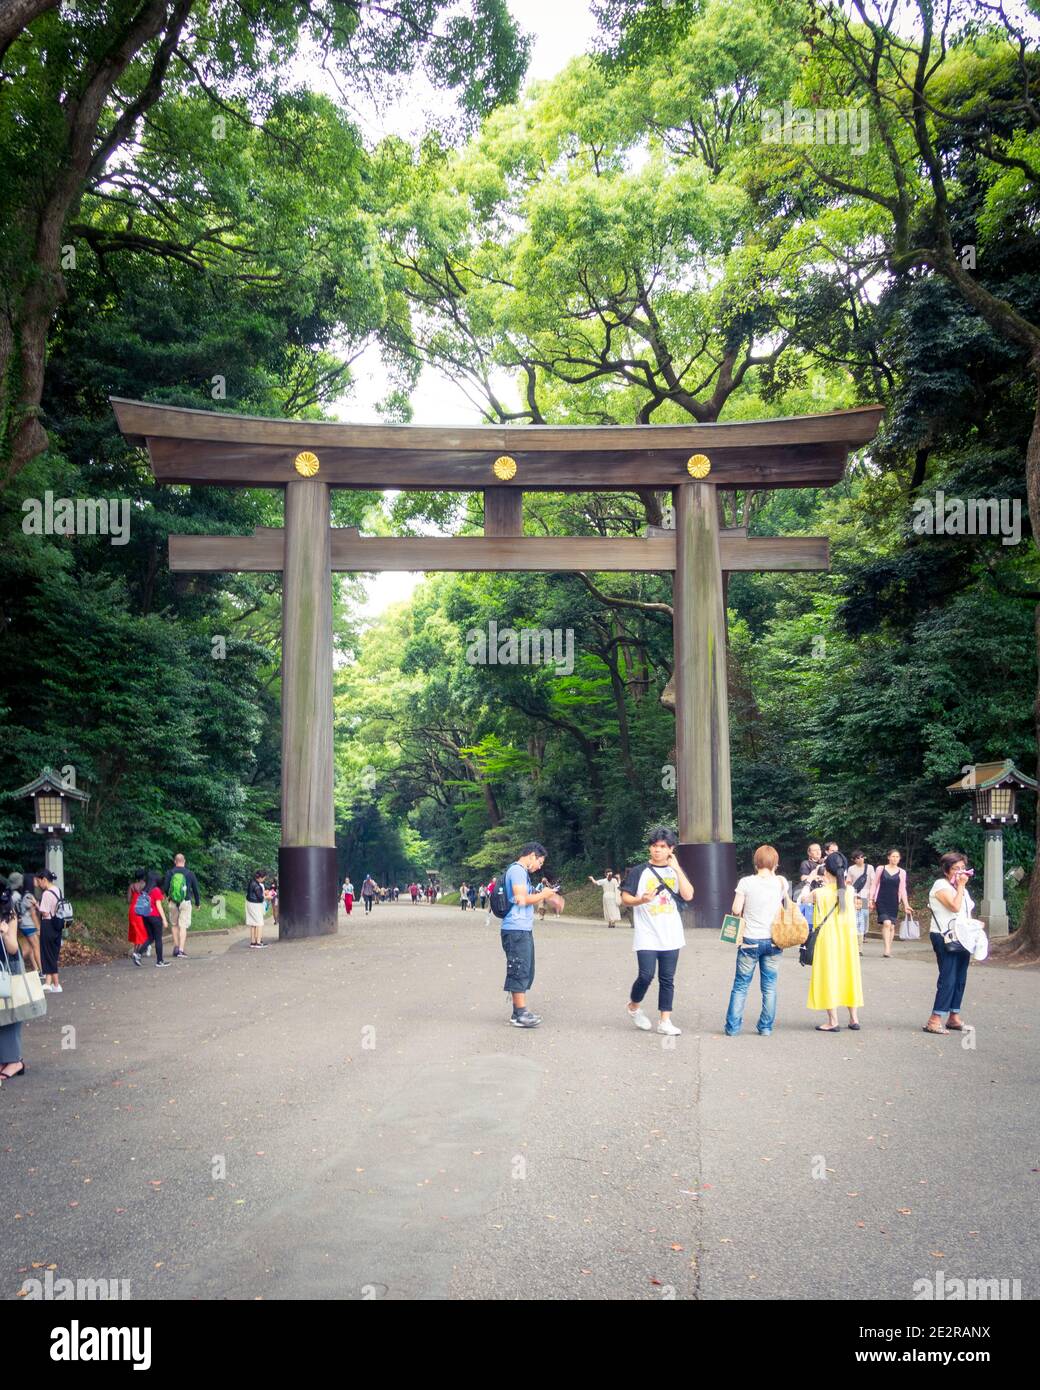 Ein 40-Fuß-Torii-Tor aus Holz am Eingang des Meiji Jingu (Meiji-Schrein), neben dem Yoyogi Park in Shibuya, Tokio, Japan. Stockfoto